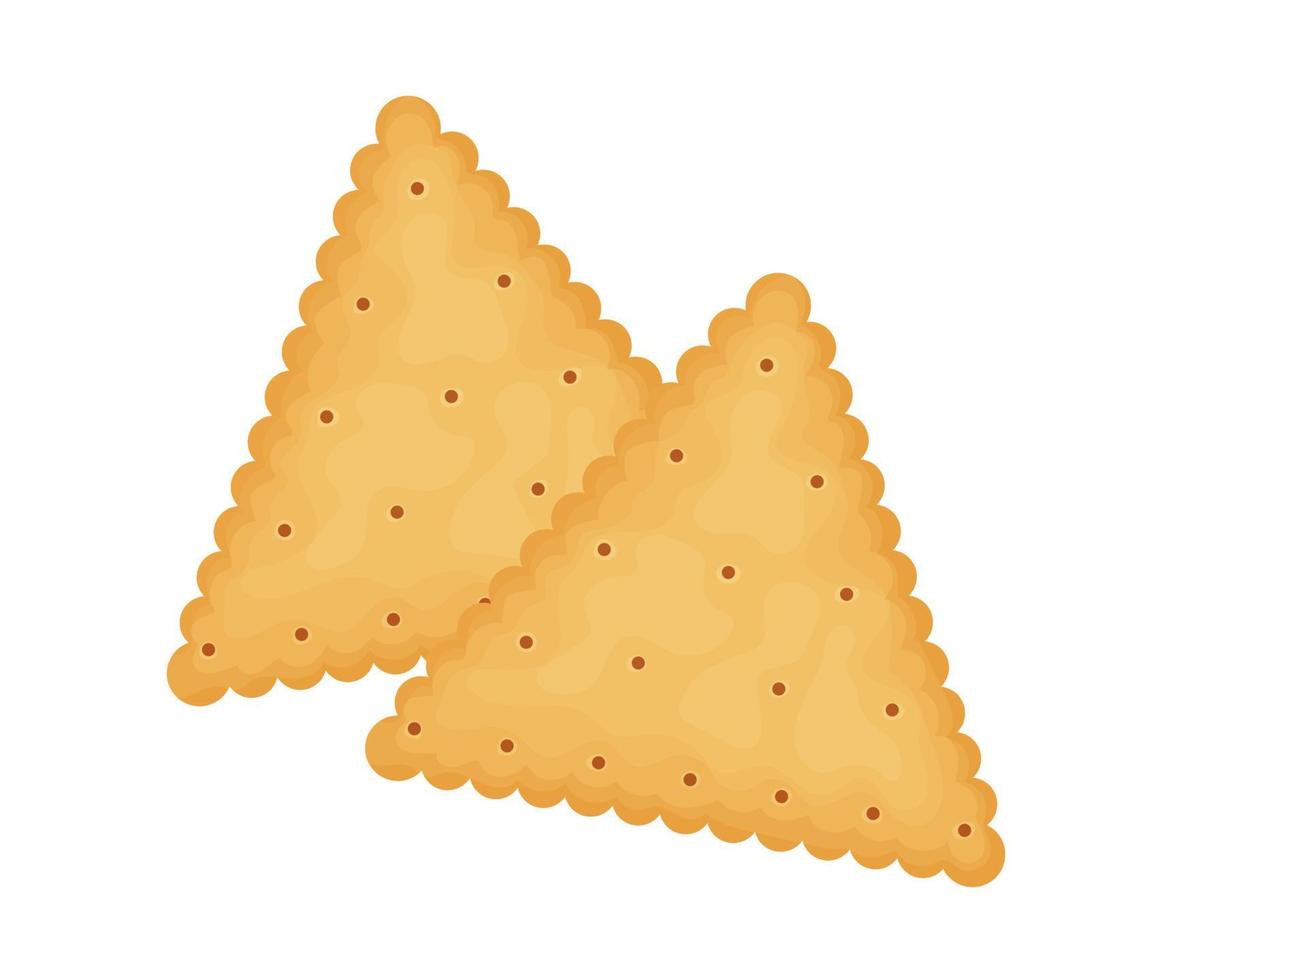 biscoitos triangulares. dois biscoitos. ilustração de comida, lanches. lanche saudável. vetor